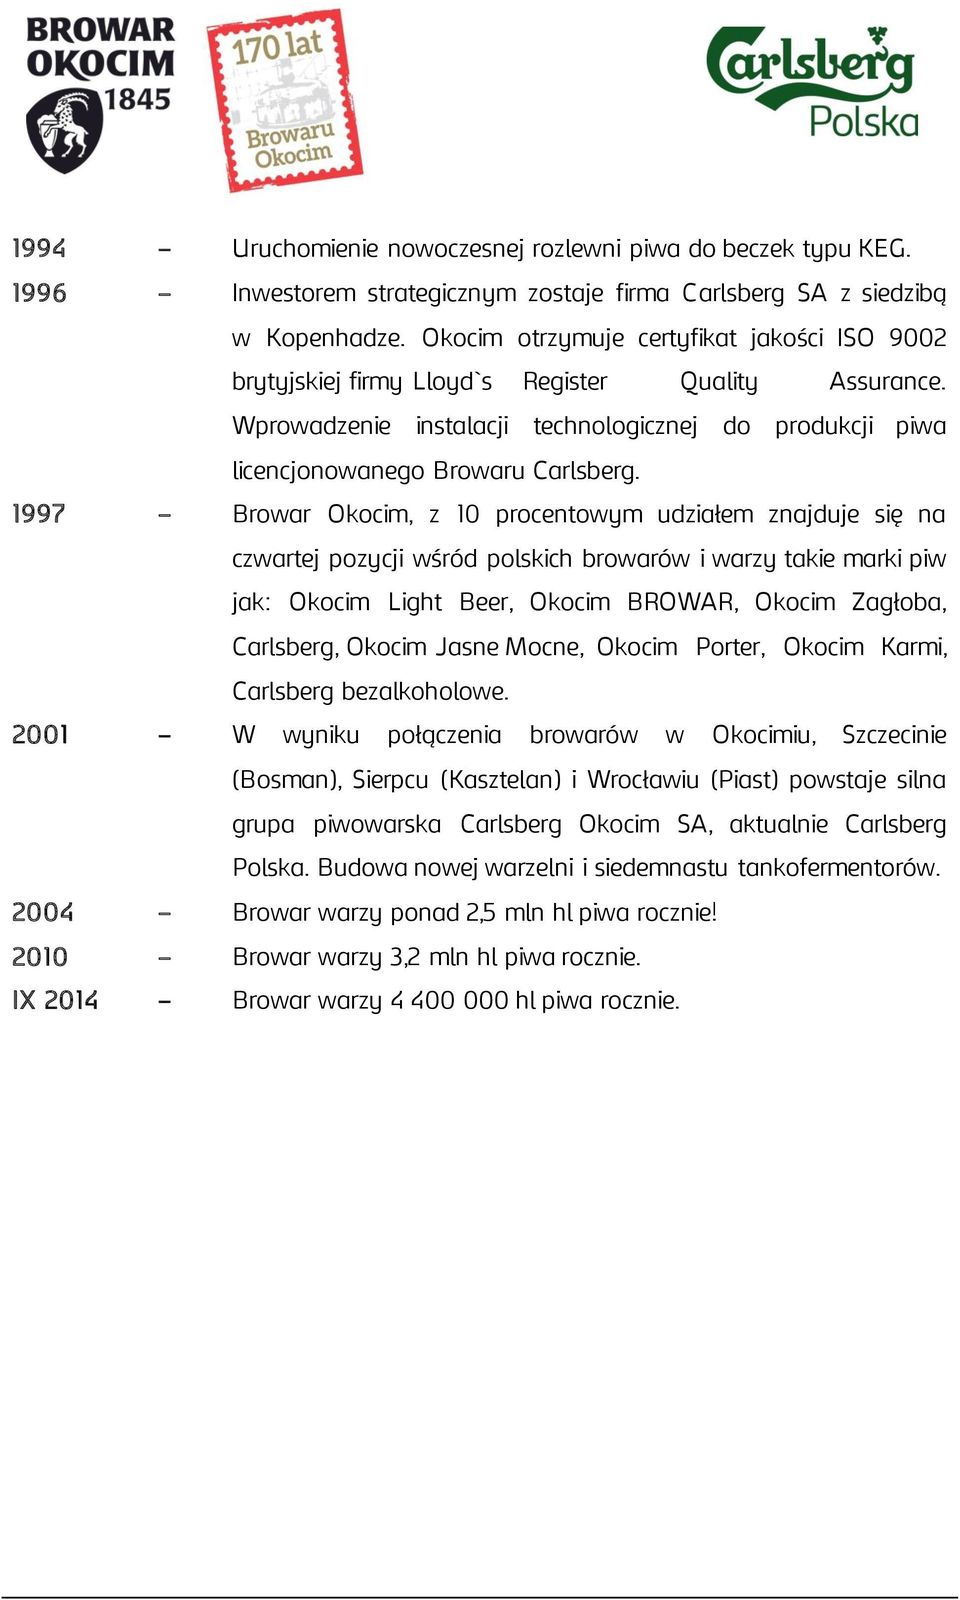 1997 Browar Okocim, z 10 procentowym udziałem znajduje się na czwartej pozycji wśród polskich browarów i warzy takie marki piw jak: Okocim Light Beer, Okocim BROWAR, Okocim Zagłoba, Carlsberg, Okocim